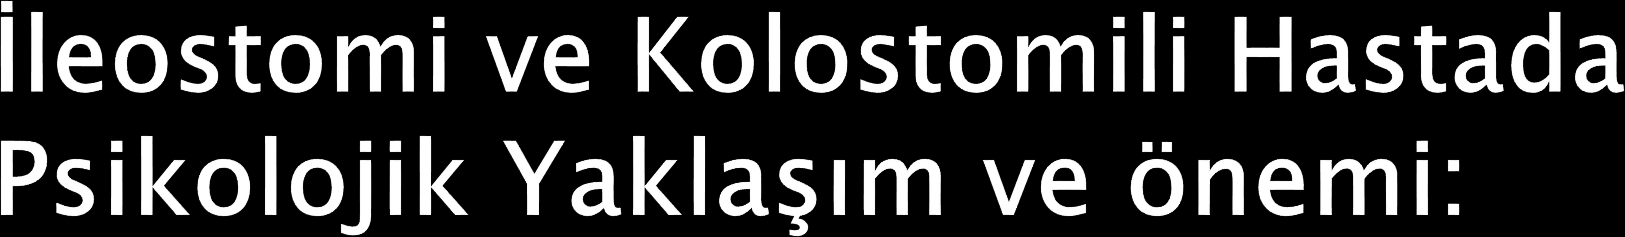 -İleostomi yada kolostomi işlemi hastayı değişik bir yaşam deneyimi ile karşı karşıya bırakmaktadır.